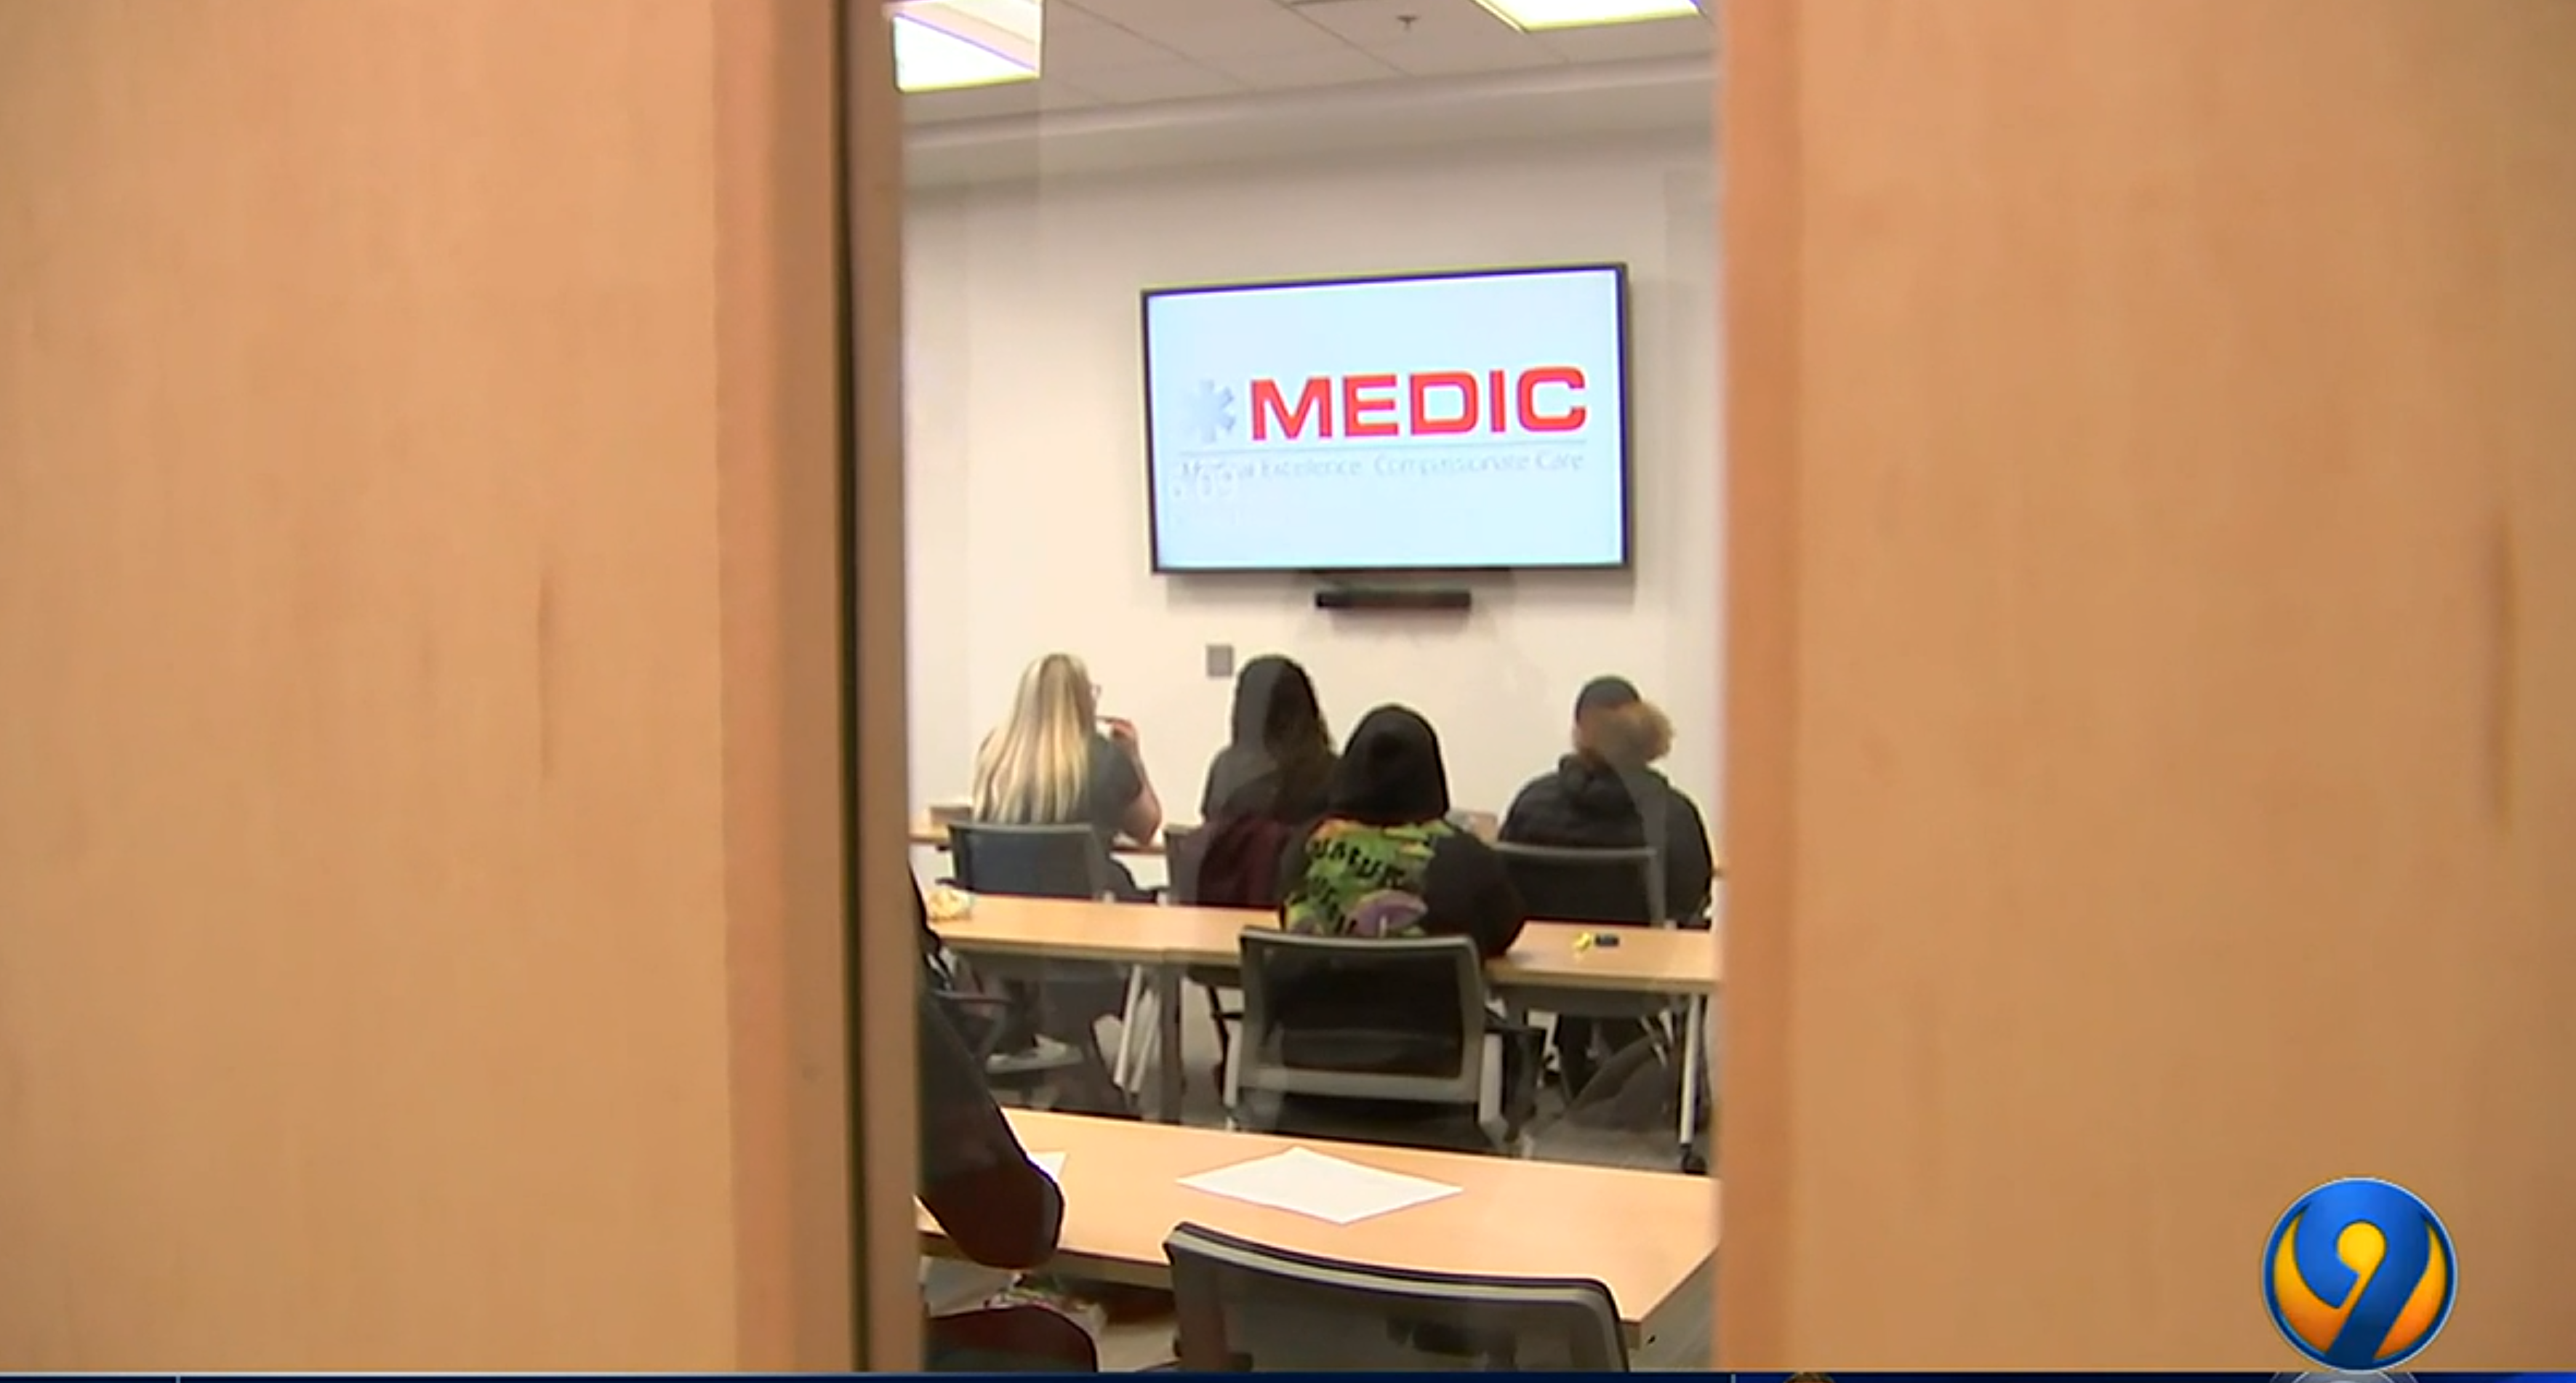 Charlotte college, MEDIC provide incentives for EMT students